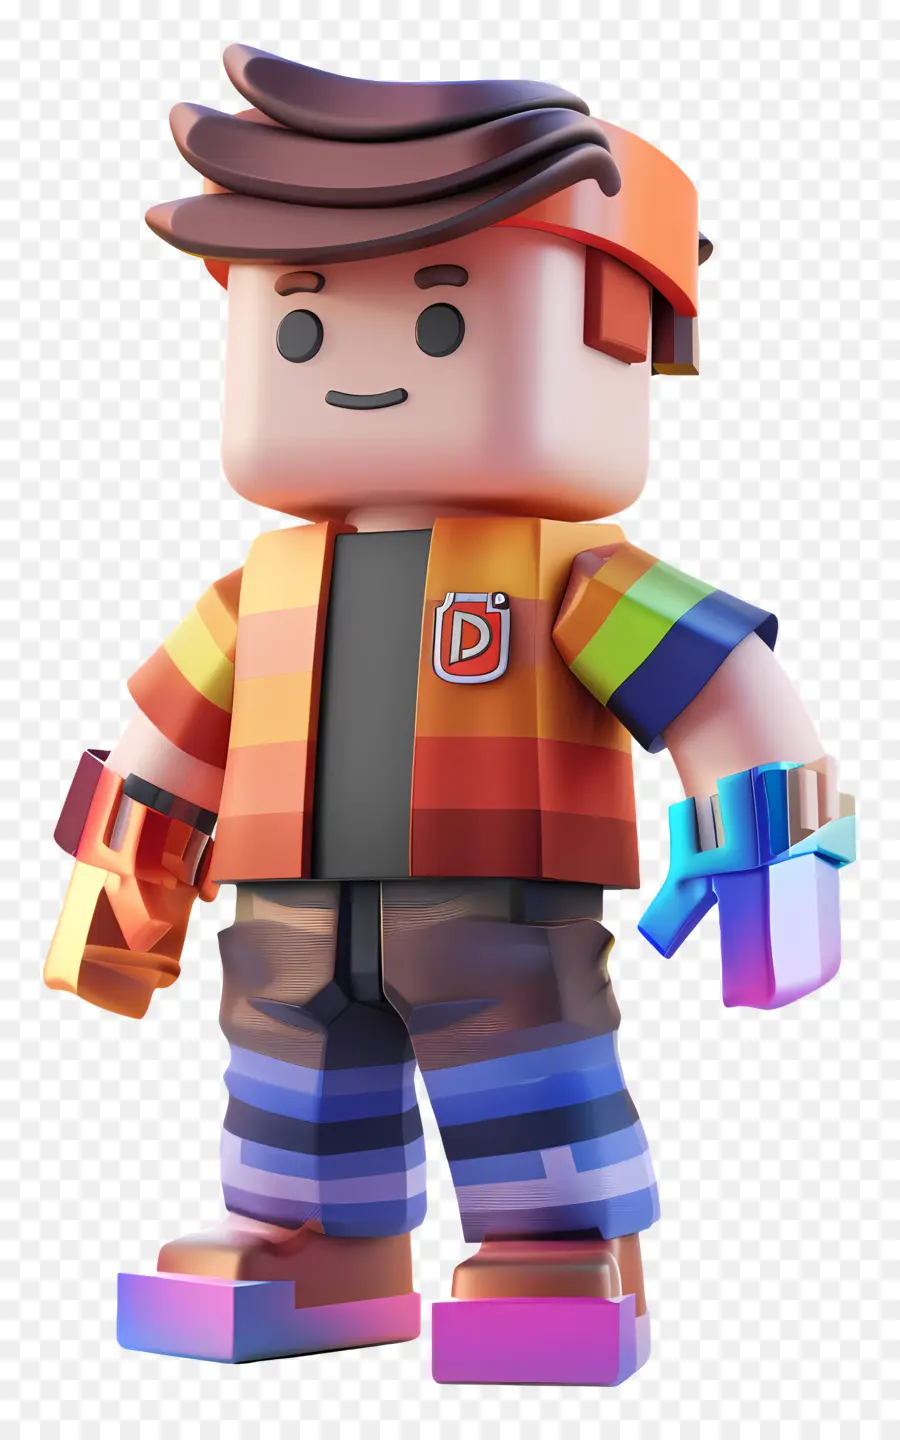 ROBLOX BOY LEGO MINI Hình áo giáp đầy màu sắc - Người Lego đầy màu sắc với râu, áo giáp, nhân viên